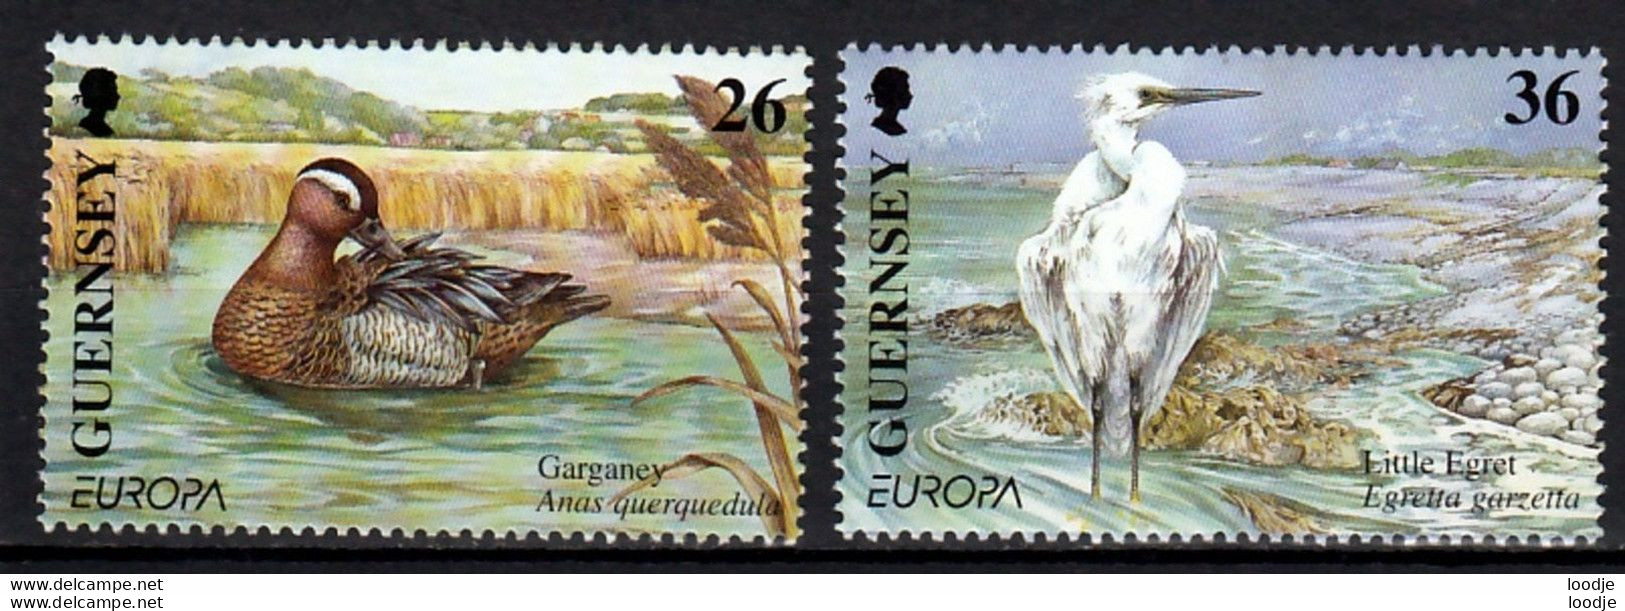 Guernsey Europa Cept 2001 Postfris - 2001